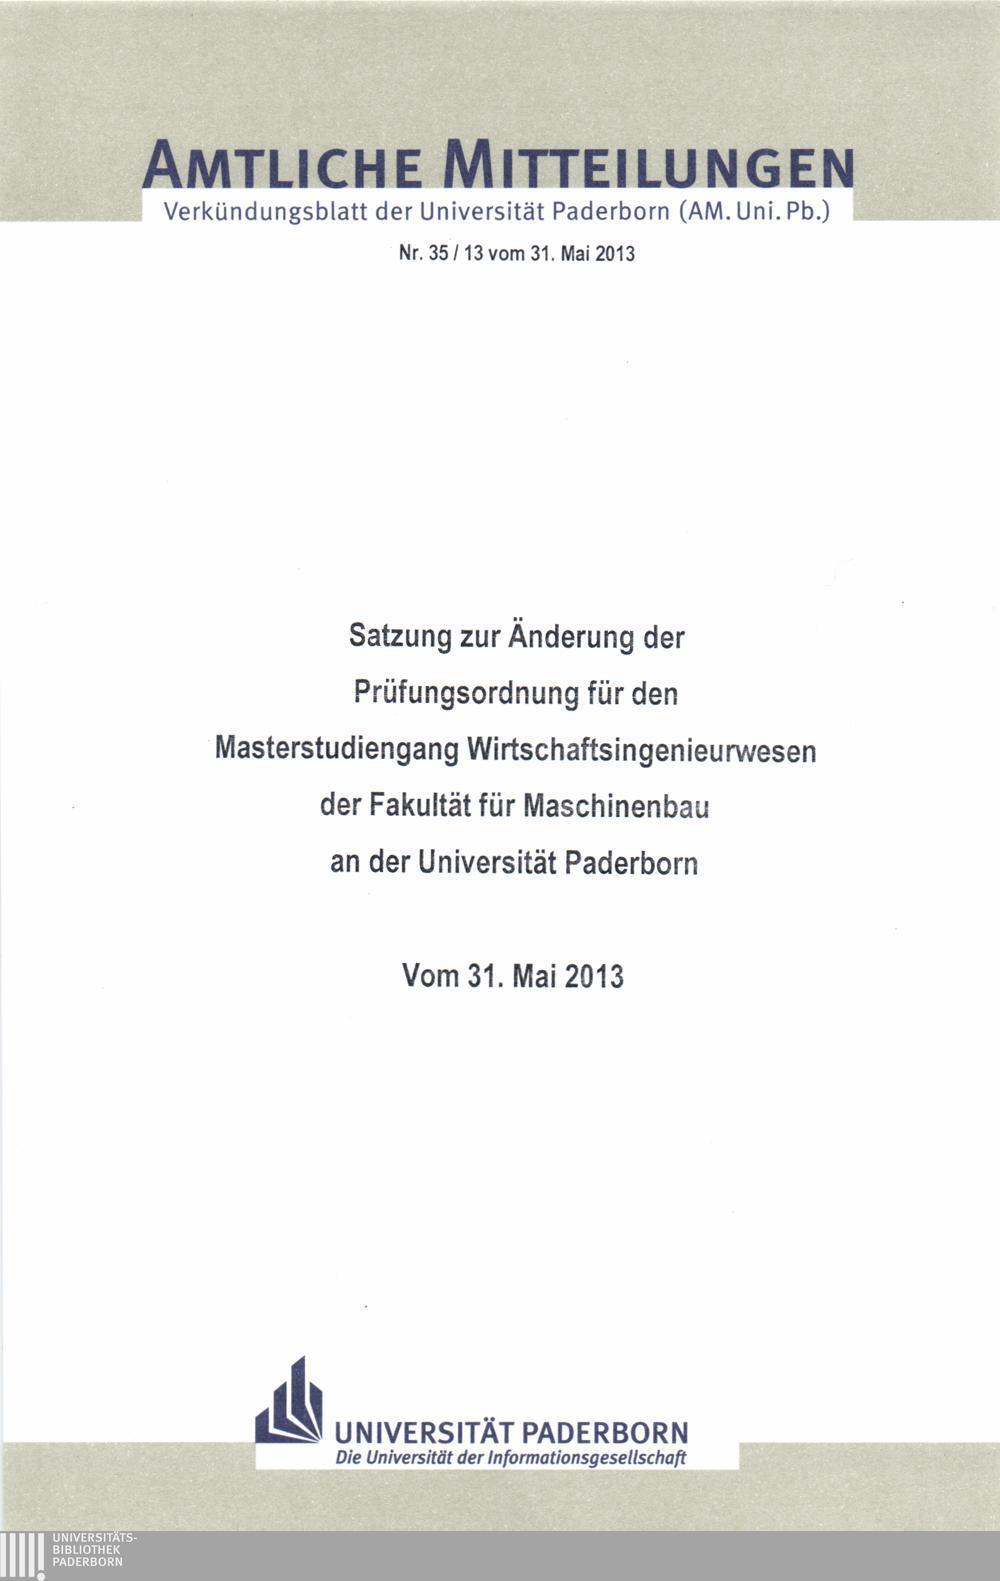 Amtliche Mitteilungen Verkündungsblatt der Universität Paderborn (AM.Uni.Pb.) Nr. 35/13 vom 31.